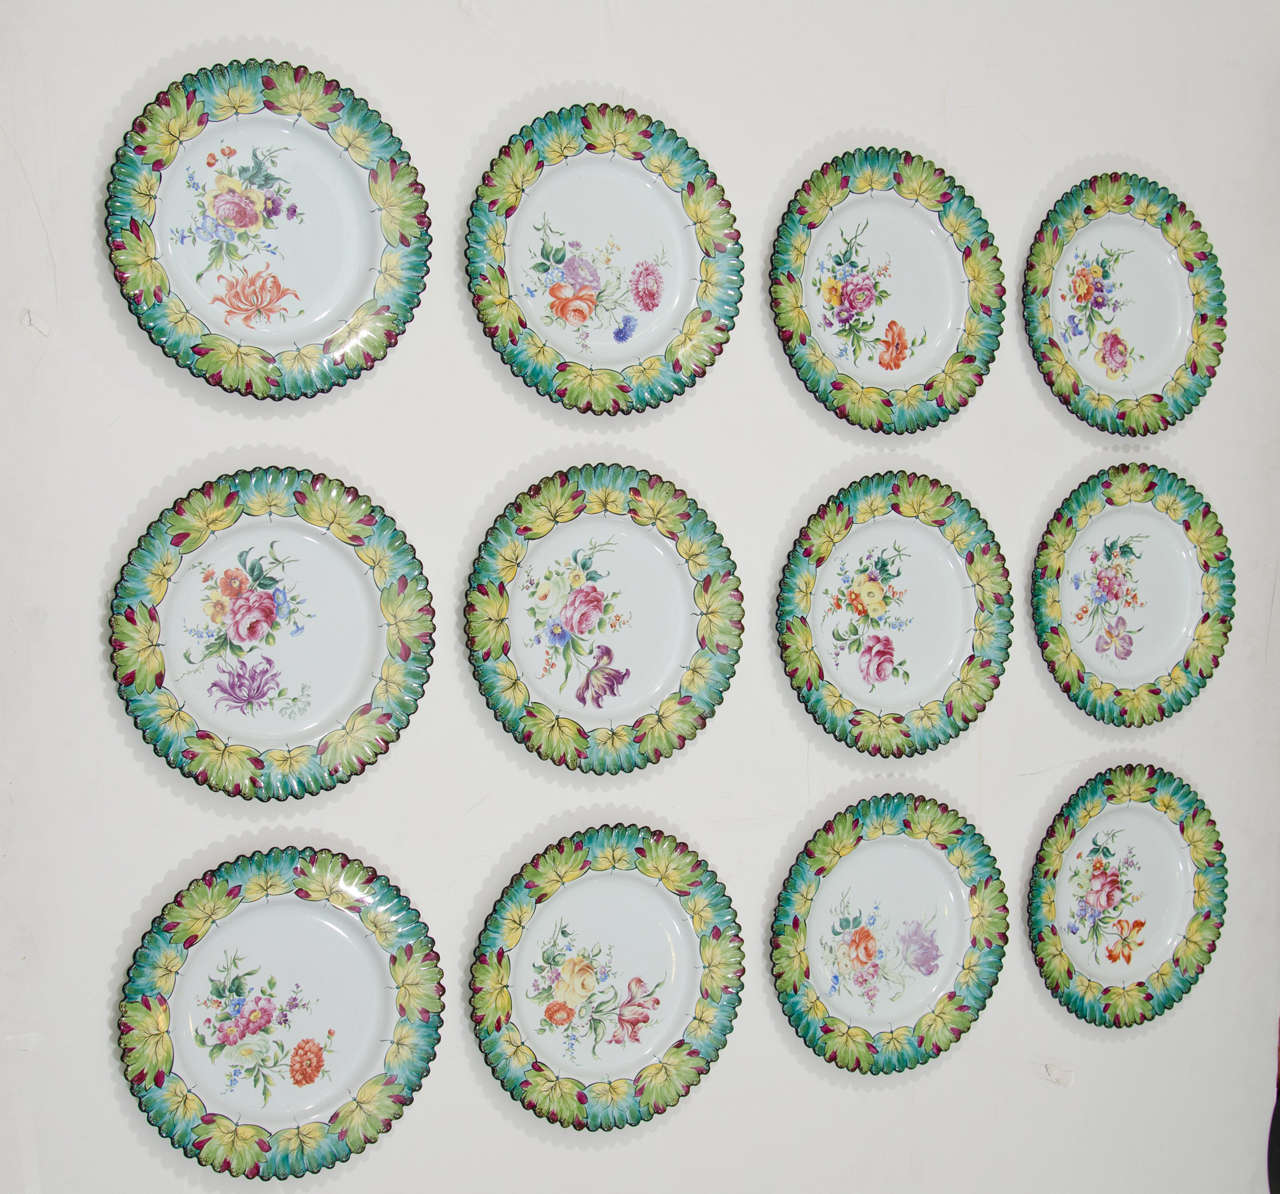 Un ensemble vintage de douze rares assiettes peintes à la main avec des bords festonnés par Camille Le Tallec pour Tiffany & By. Fabriquée en 1964, et peinte par un artisan portant les initiales G.M.

Dix plaques sont en parfait état.  L'une des